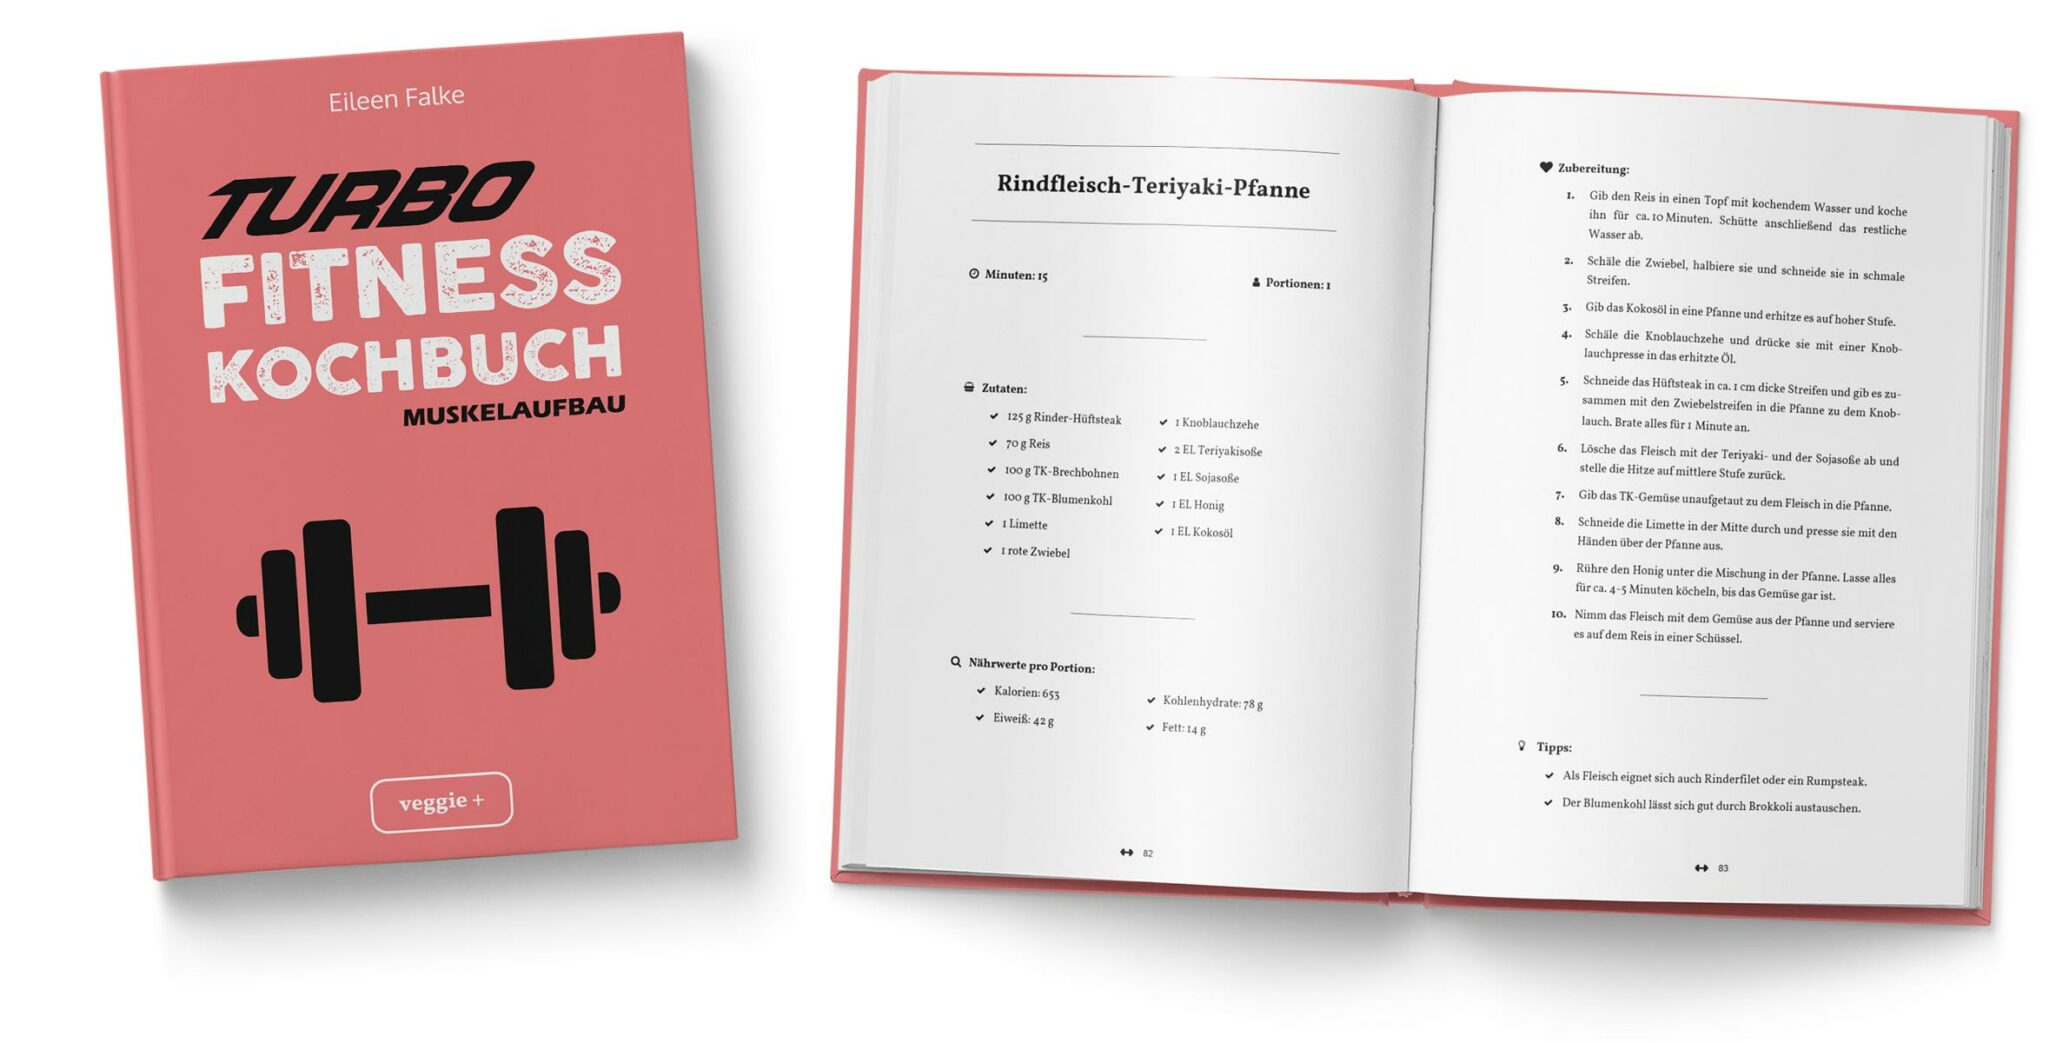 Turbo-Fitness-Kochbuch (Muskelaufbau): 100 schnelle Fitness-Rezepte für eine gesunde Ernährung und einen nachhaltigen Muskelaufbau von Eileen Falke im veggie + Verlag